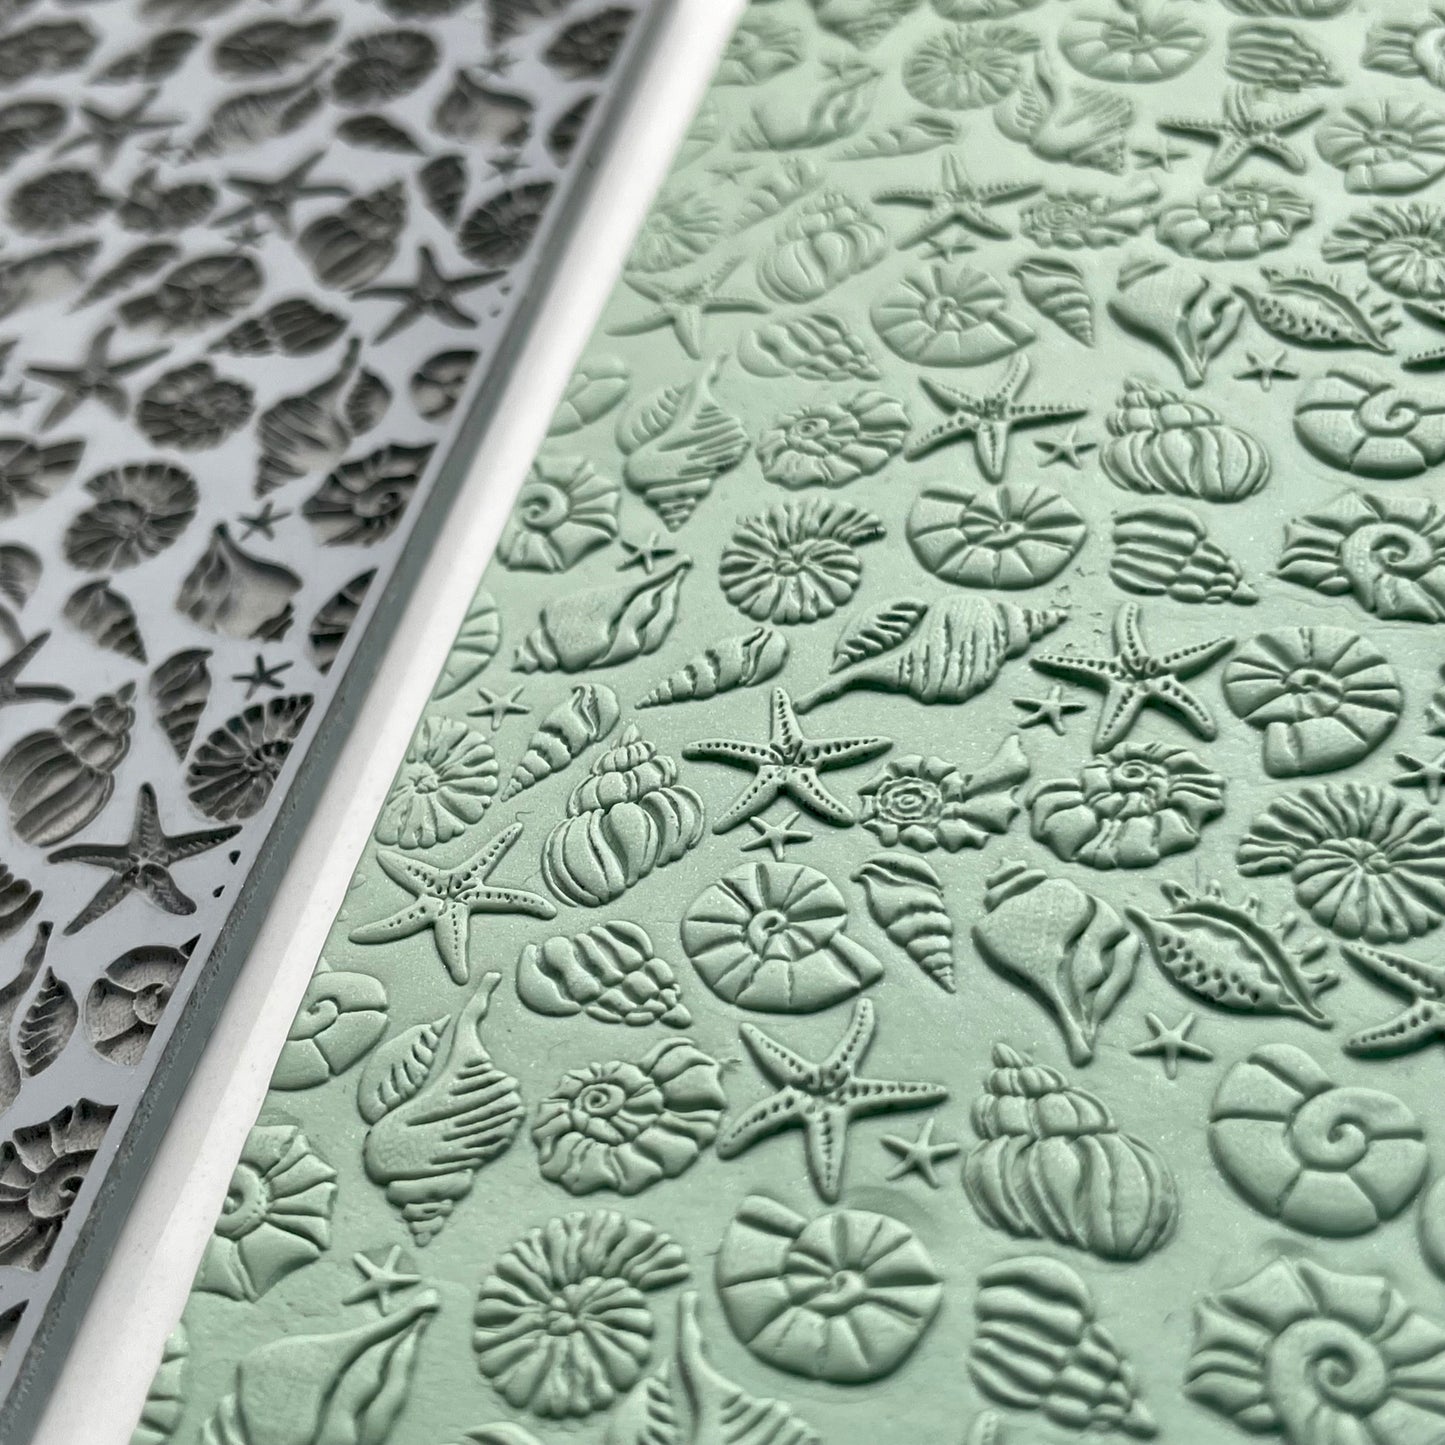 Seashells texture mat